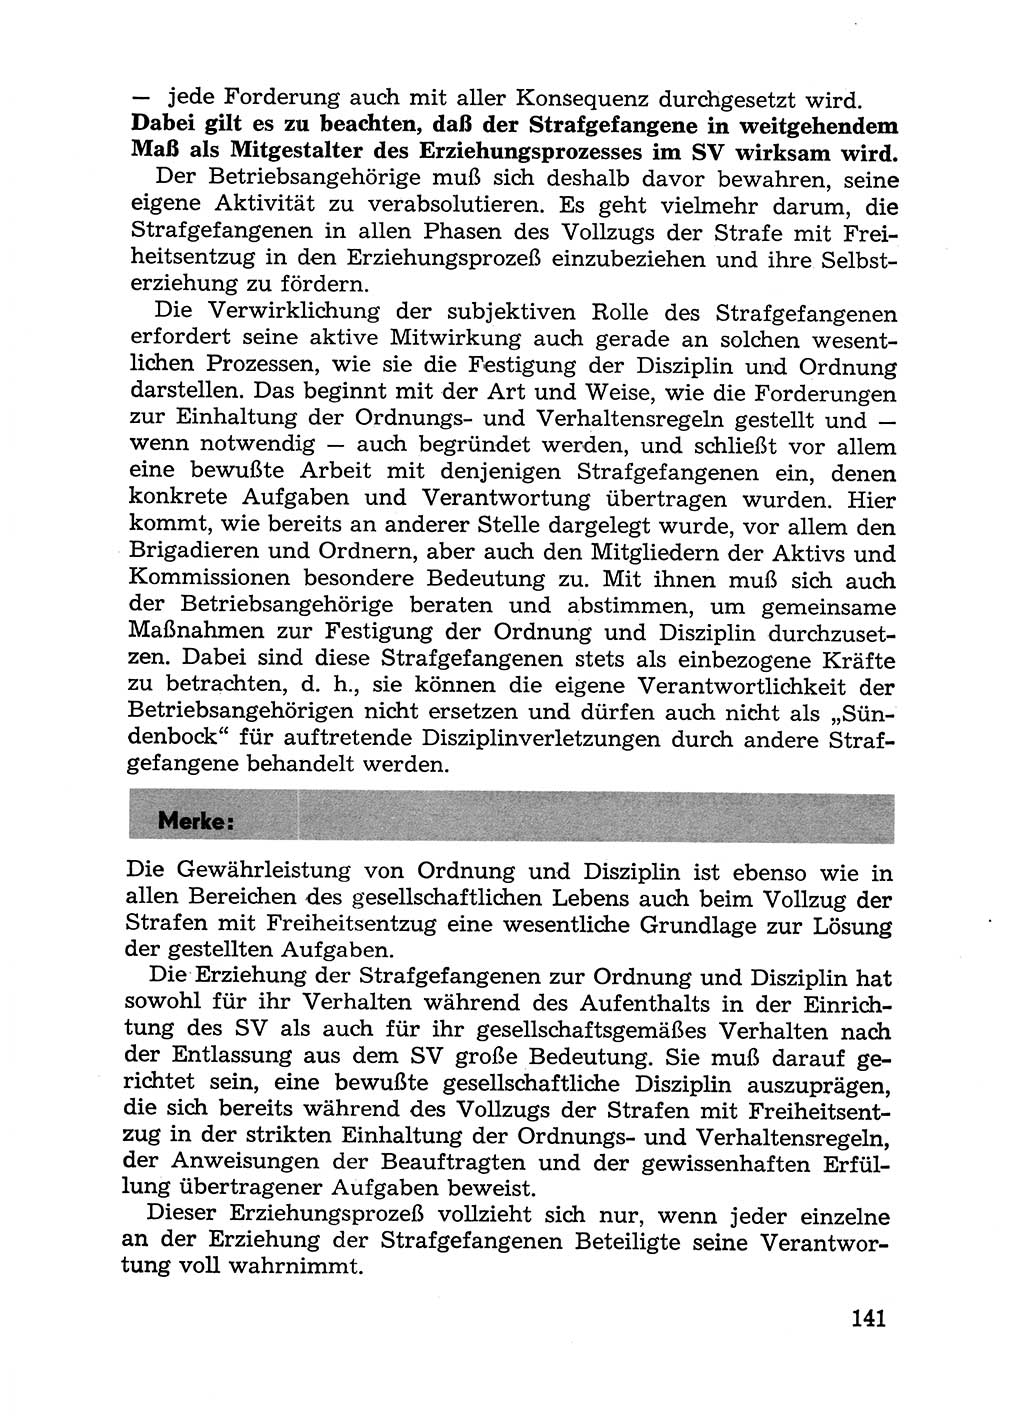 Handbuch für Betriebsangehörige, Abteilung Strafvollzug (SV) [Ministerium des Innern (MdI) Deutsche Demokratische Republik (DDR)] 1981, Seite 141 (Hb. BA Abt. SV MdI DDR 1981, S. 141)